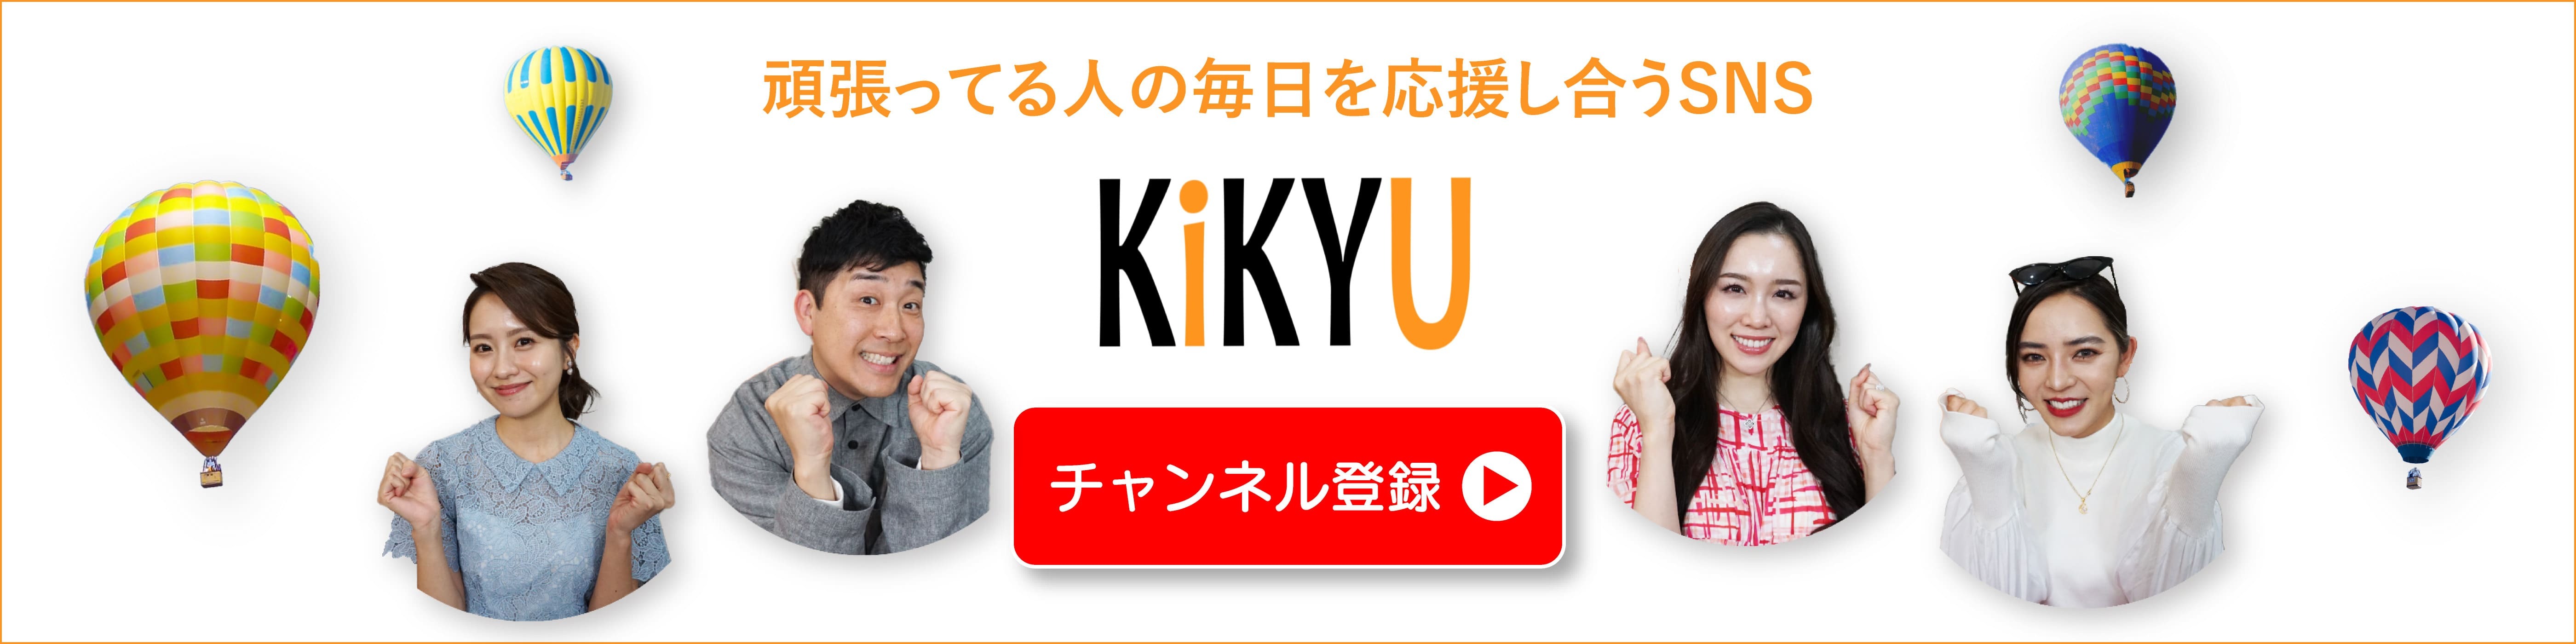 新しいタブでYouTube「KiKYU」公式サイトへ飛ぶ